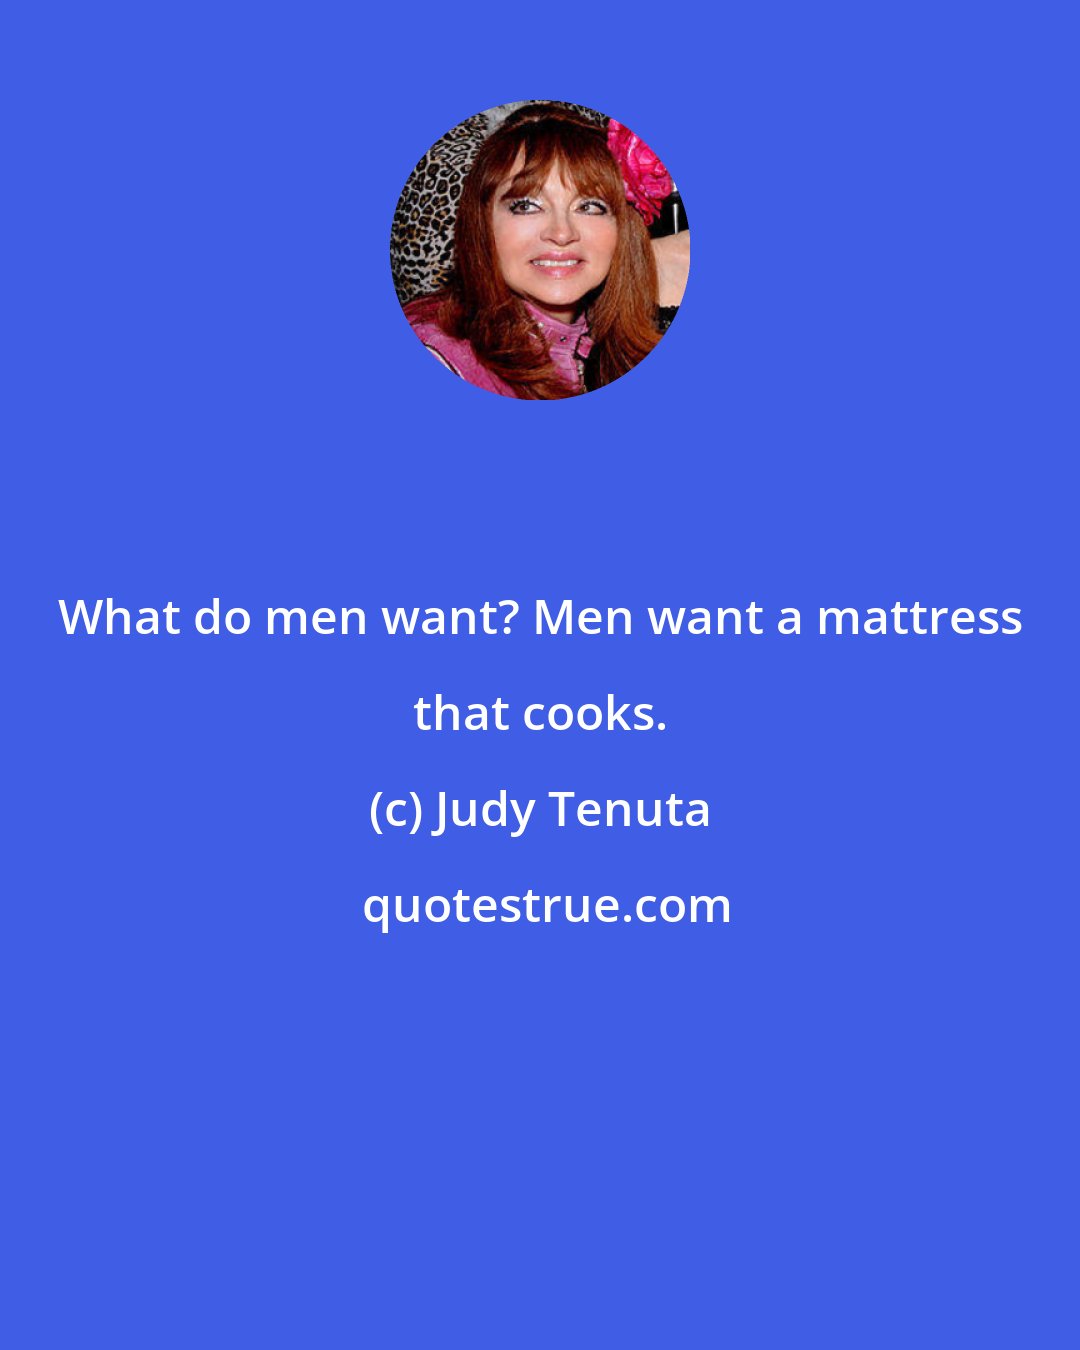 Judy Tenuta: What do men want? Men want a mattress that cooks.